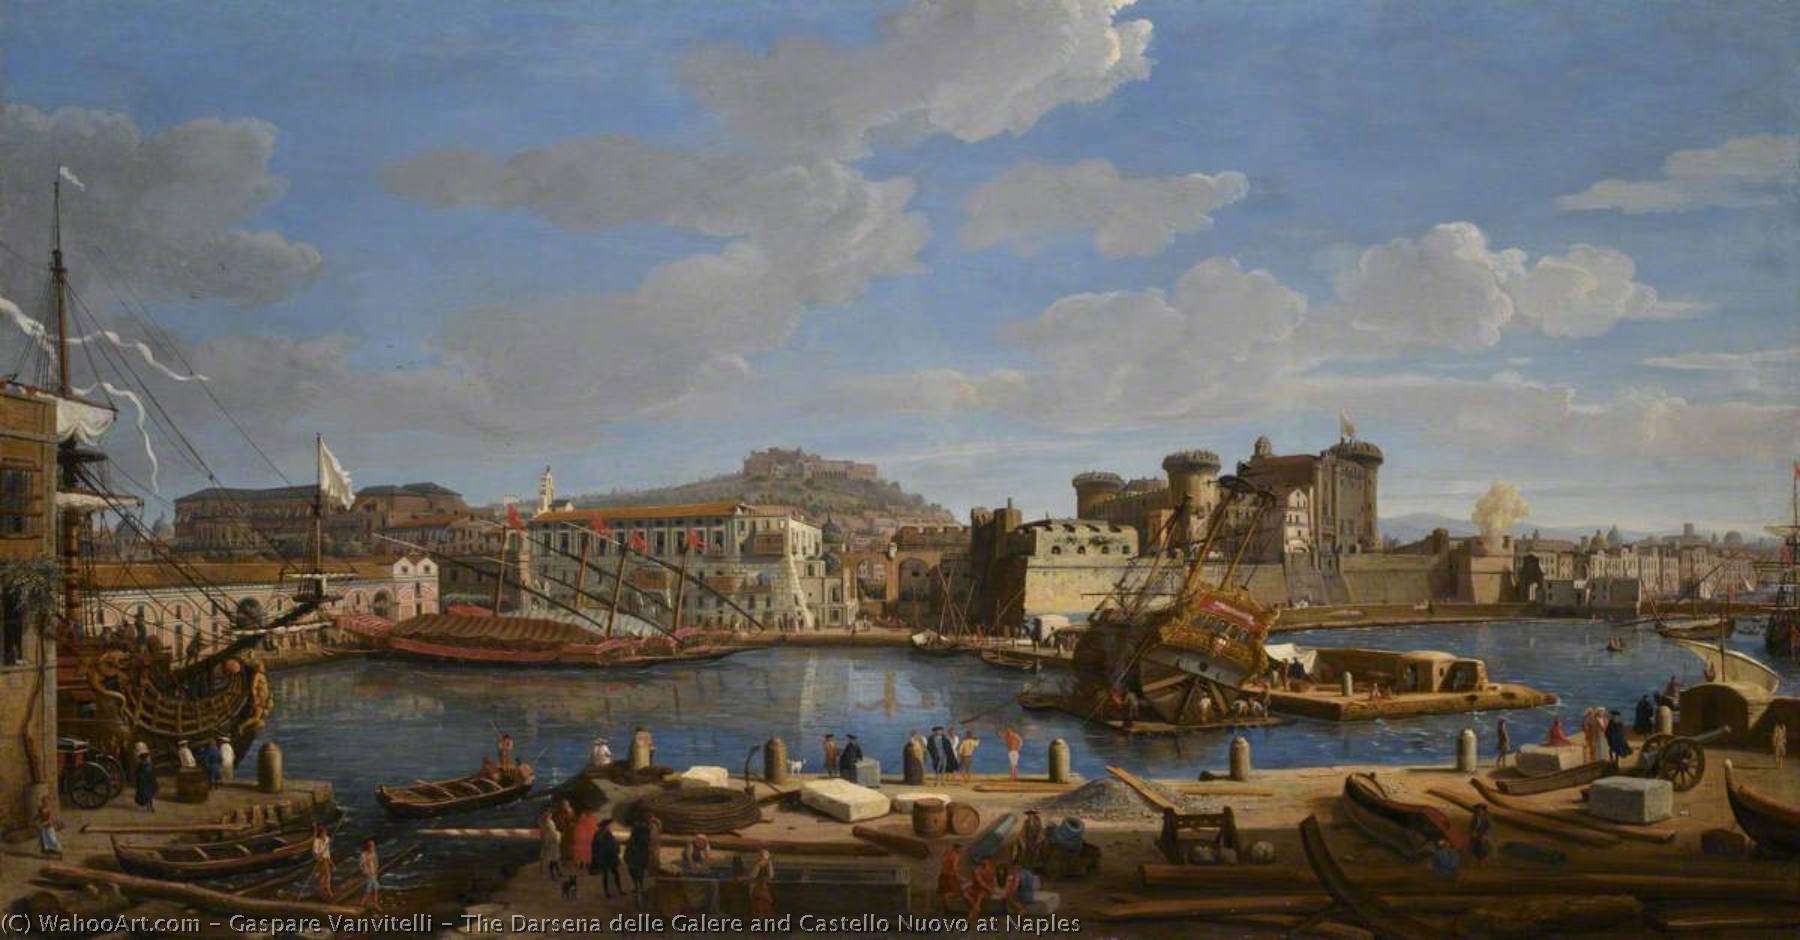 WikiOO.org - Encyclopedia of Fine Arts - Lukisan, Artwork Gaspare Vanvitelli - The Darsena delle Galere and Castello Nuovo at Naples